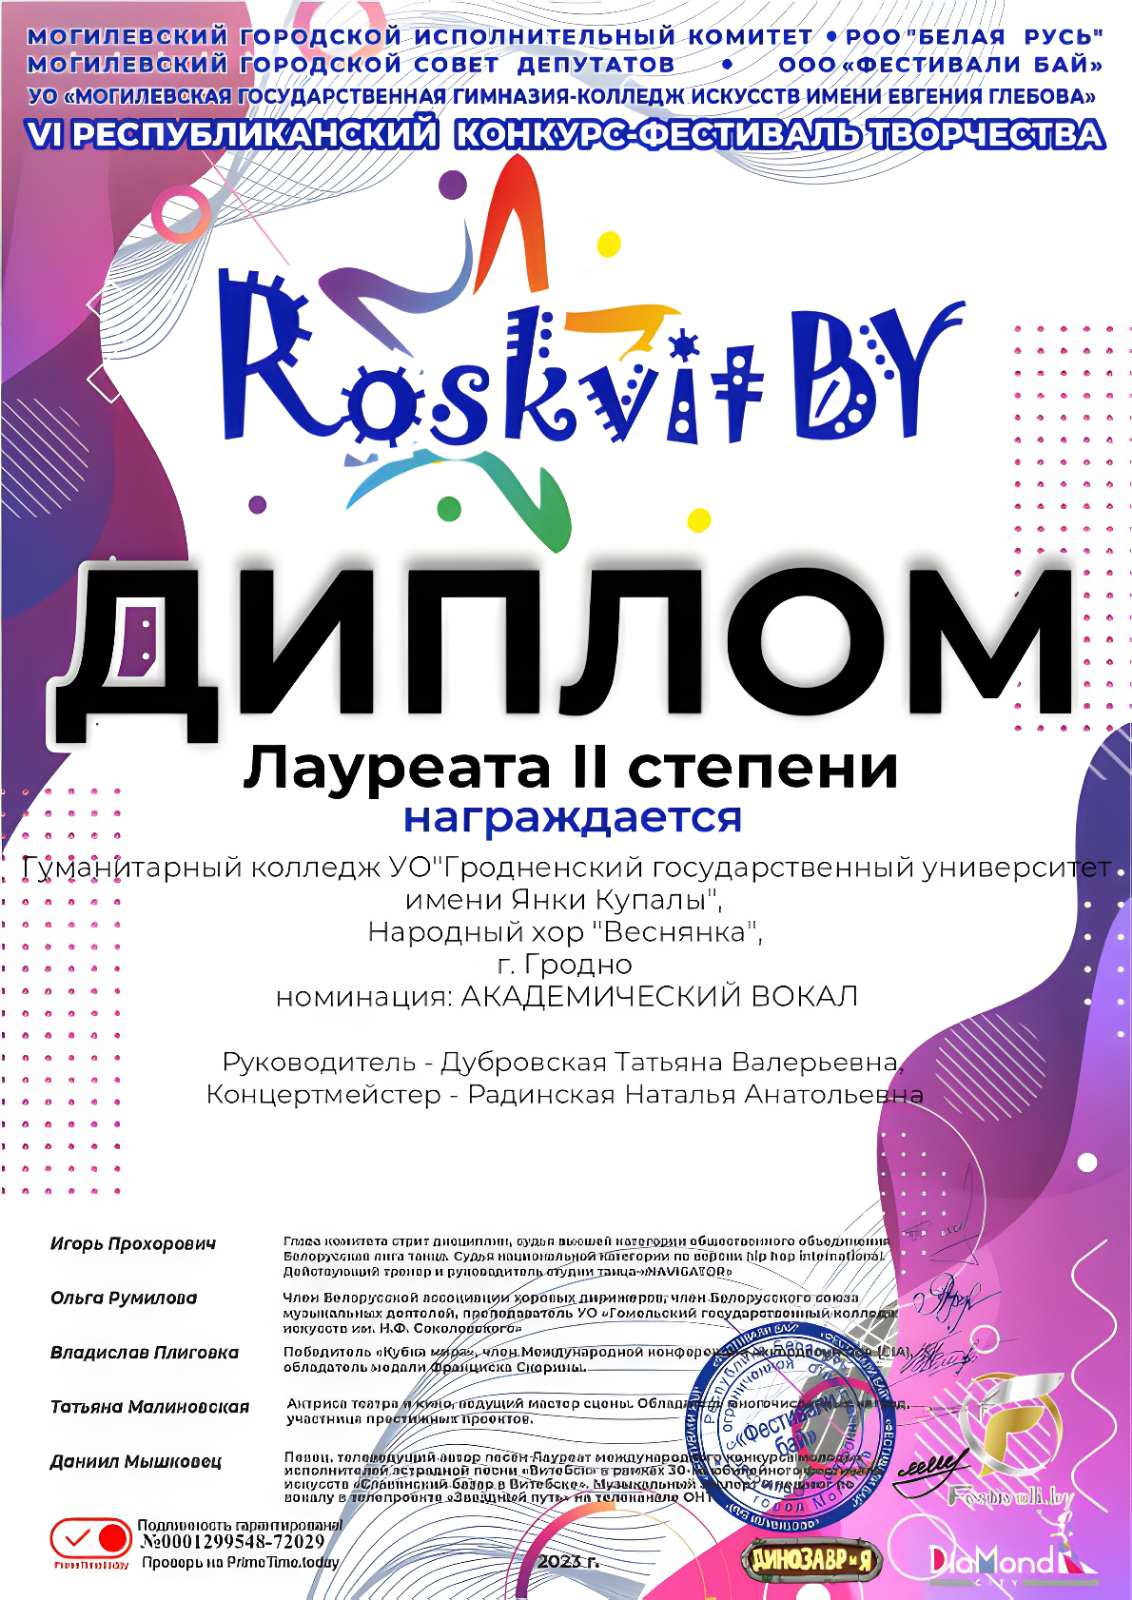 Открыта регистрация на Всероссийский конкурс «Большая перемена»